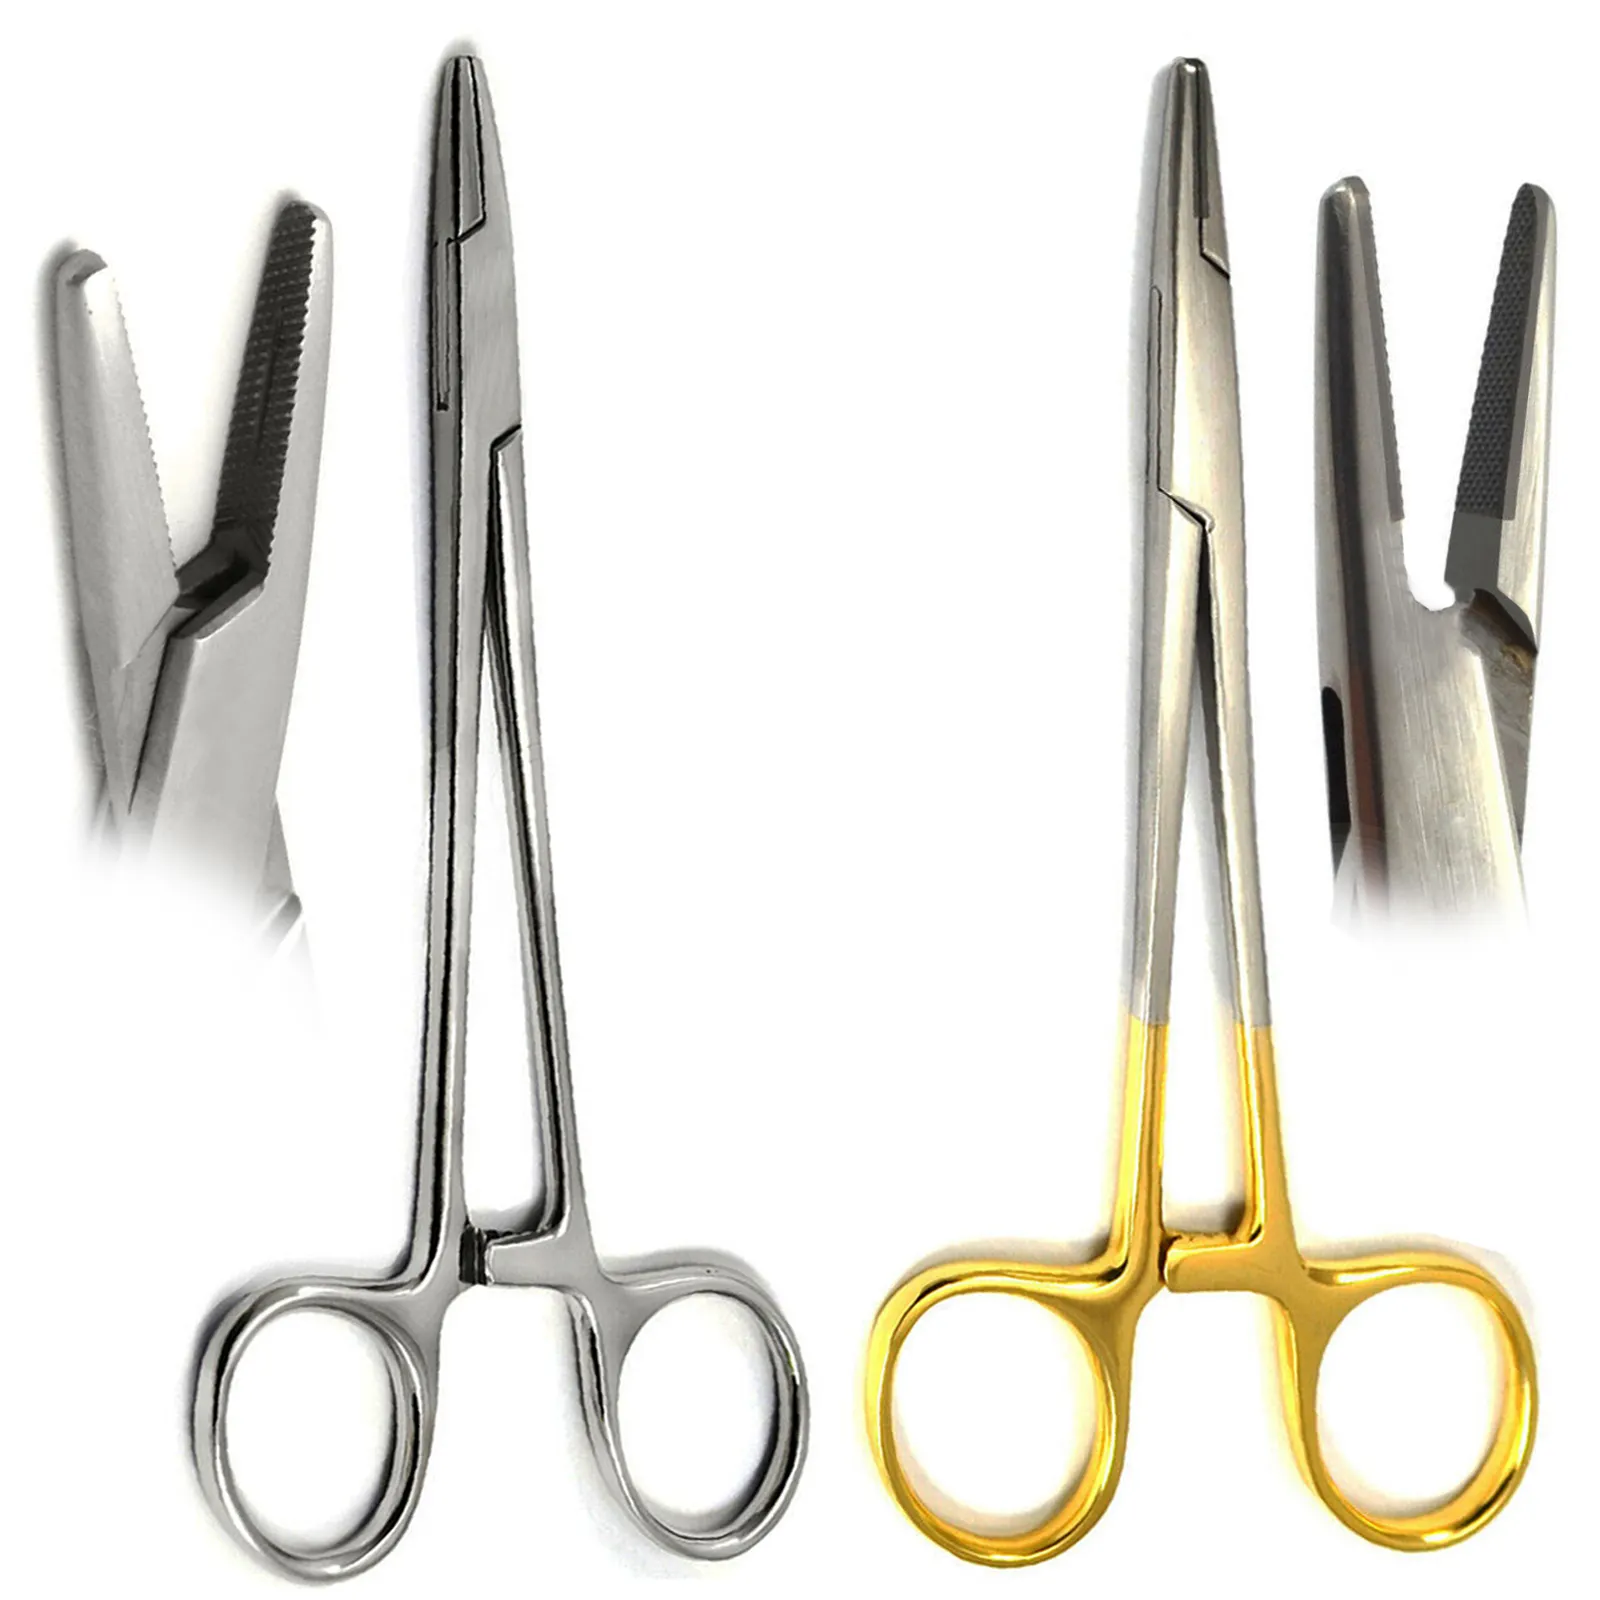 Braçadeira para artérias de pinças Mayo Hegar, instrumento veterinário para piercing cirúrgico corporal, pinça para agulhas, alicate de costura e travamento